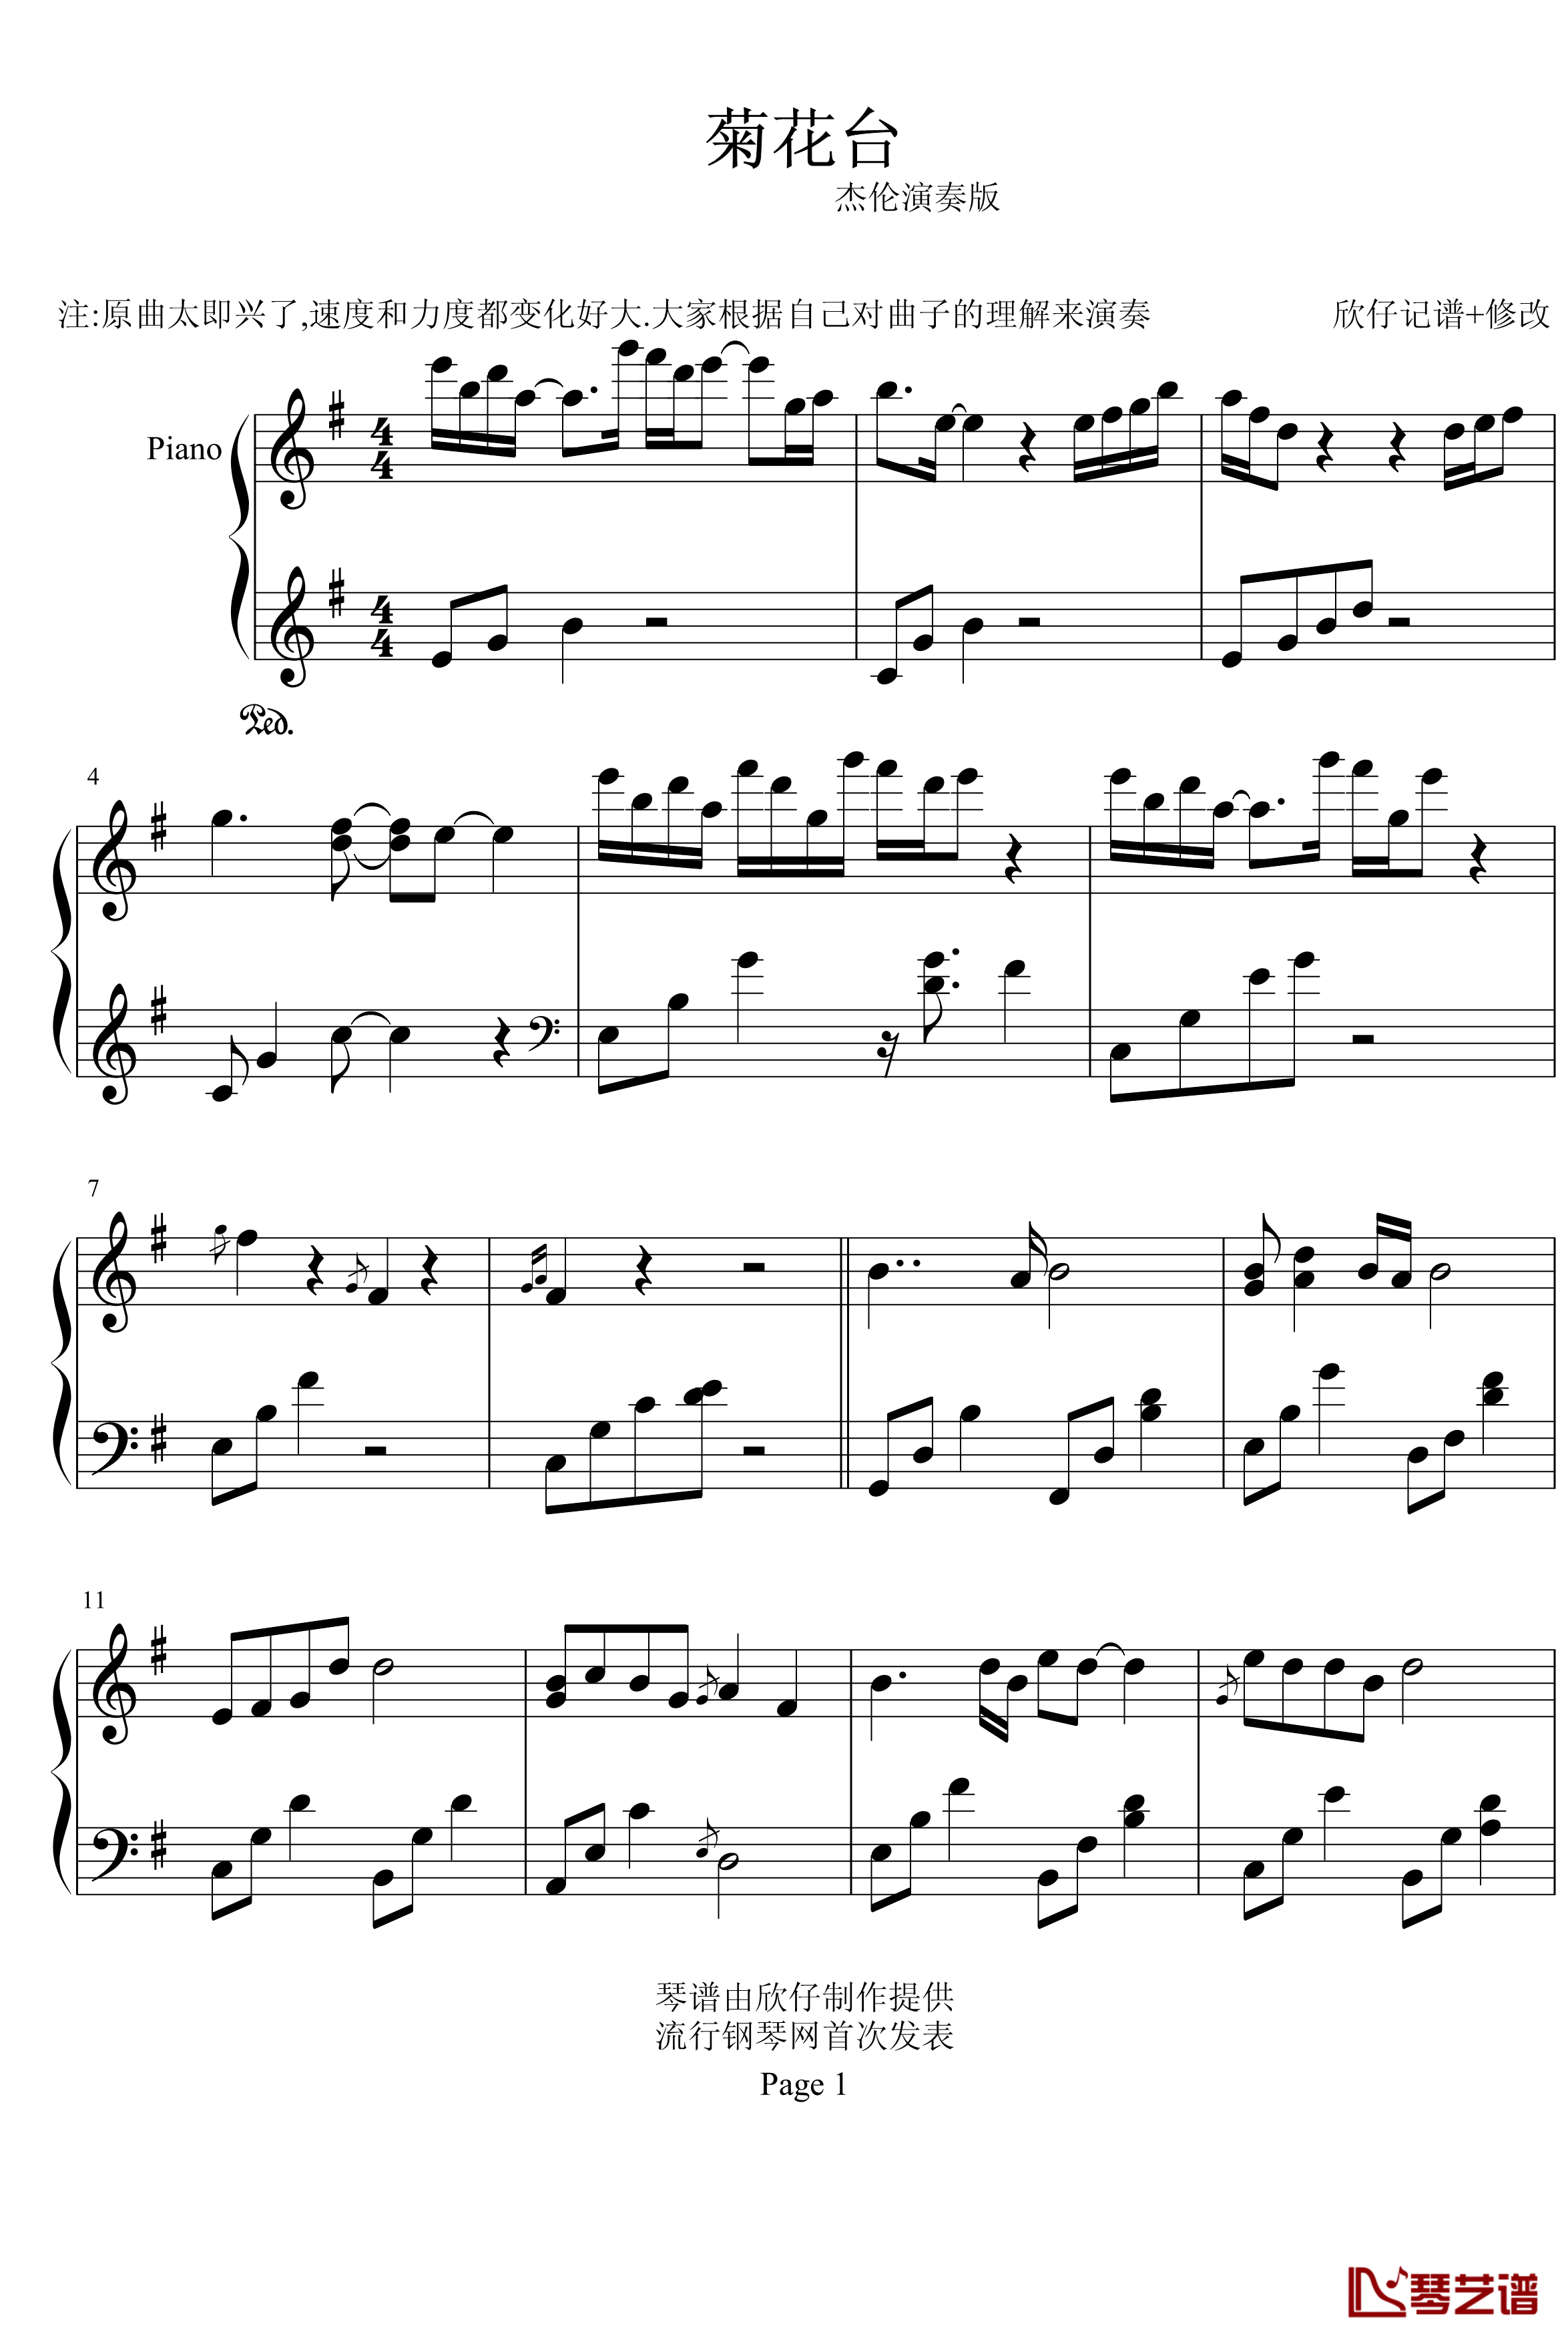 菊花台钢琴谱-周杰伦1